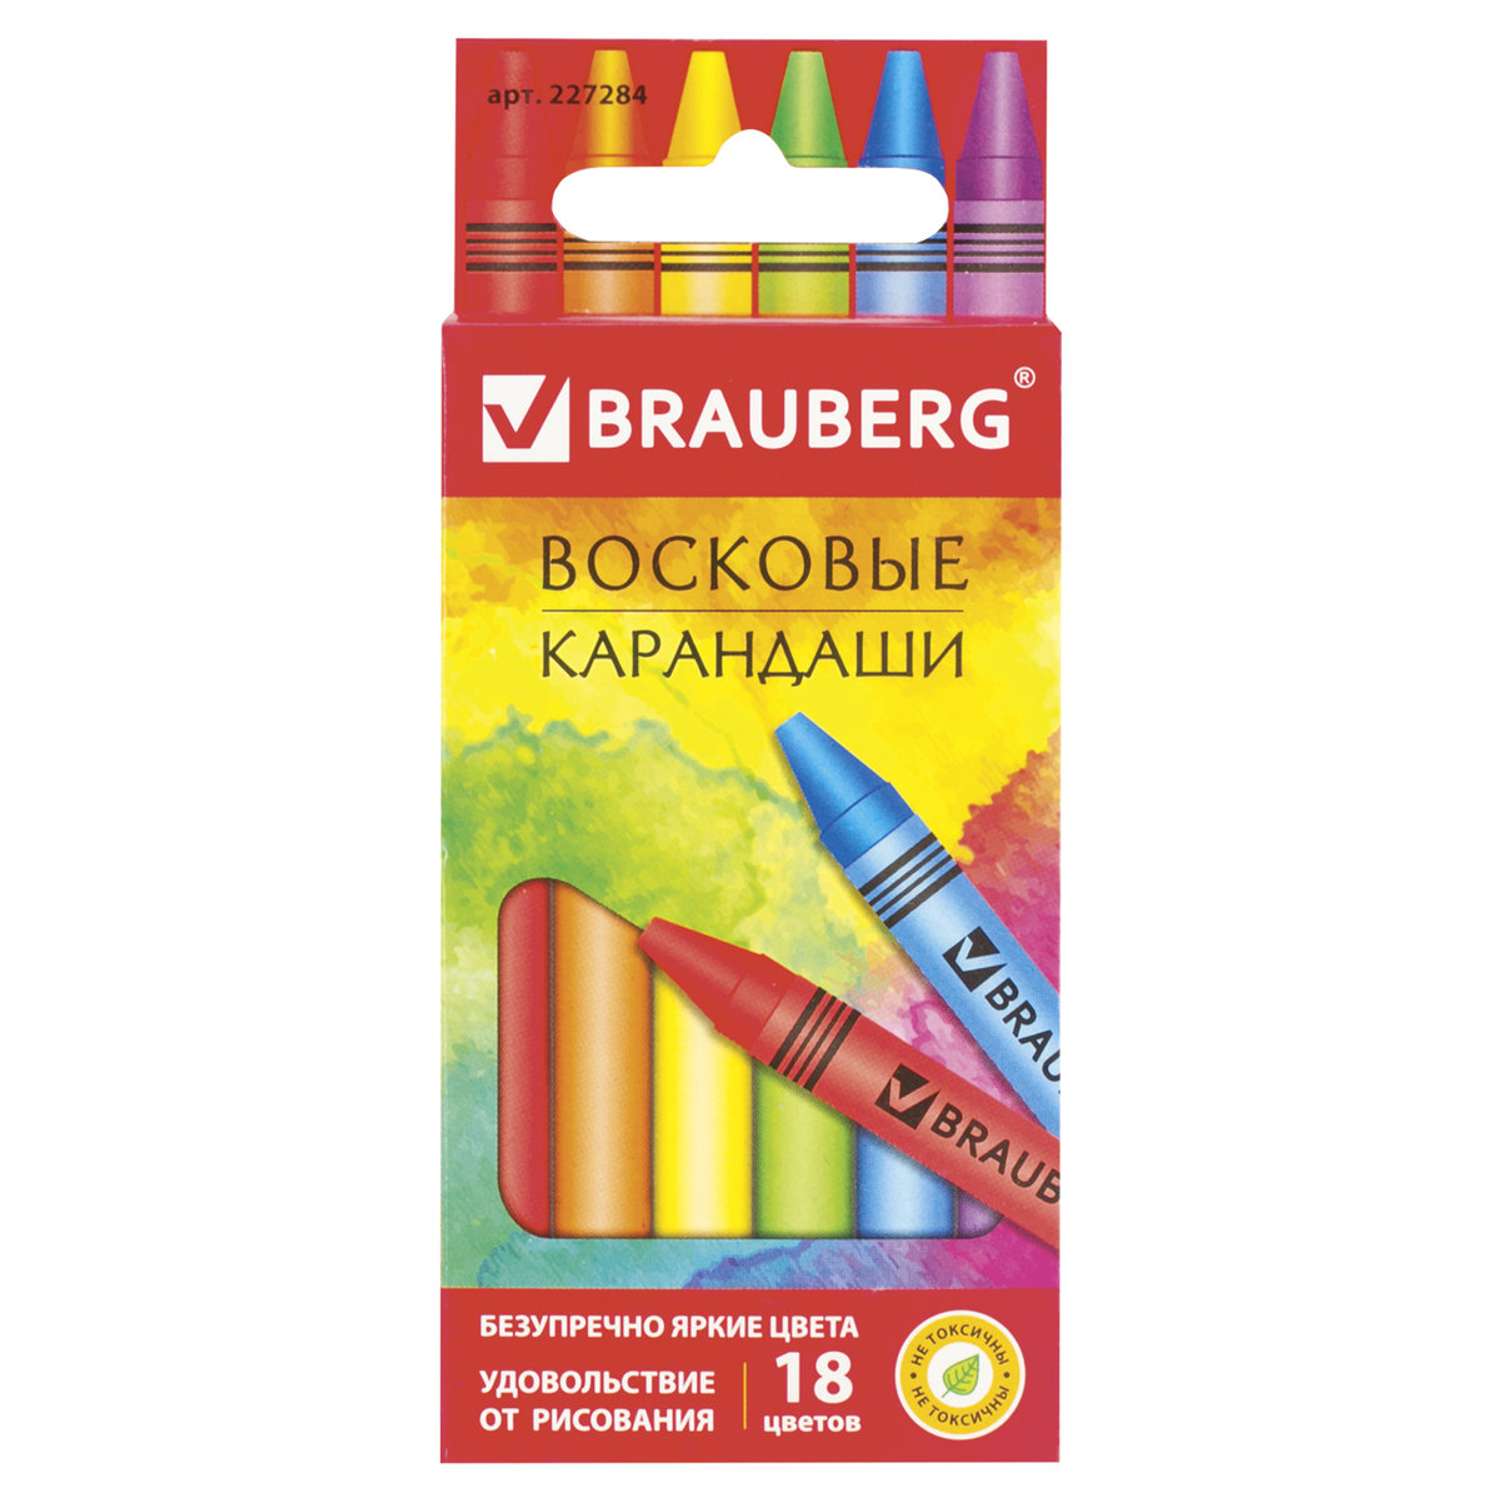 Восковые карандаши Brauberg для рисования - фото 1